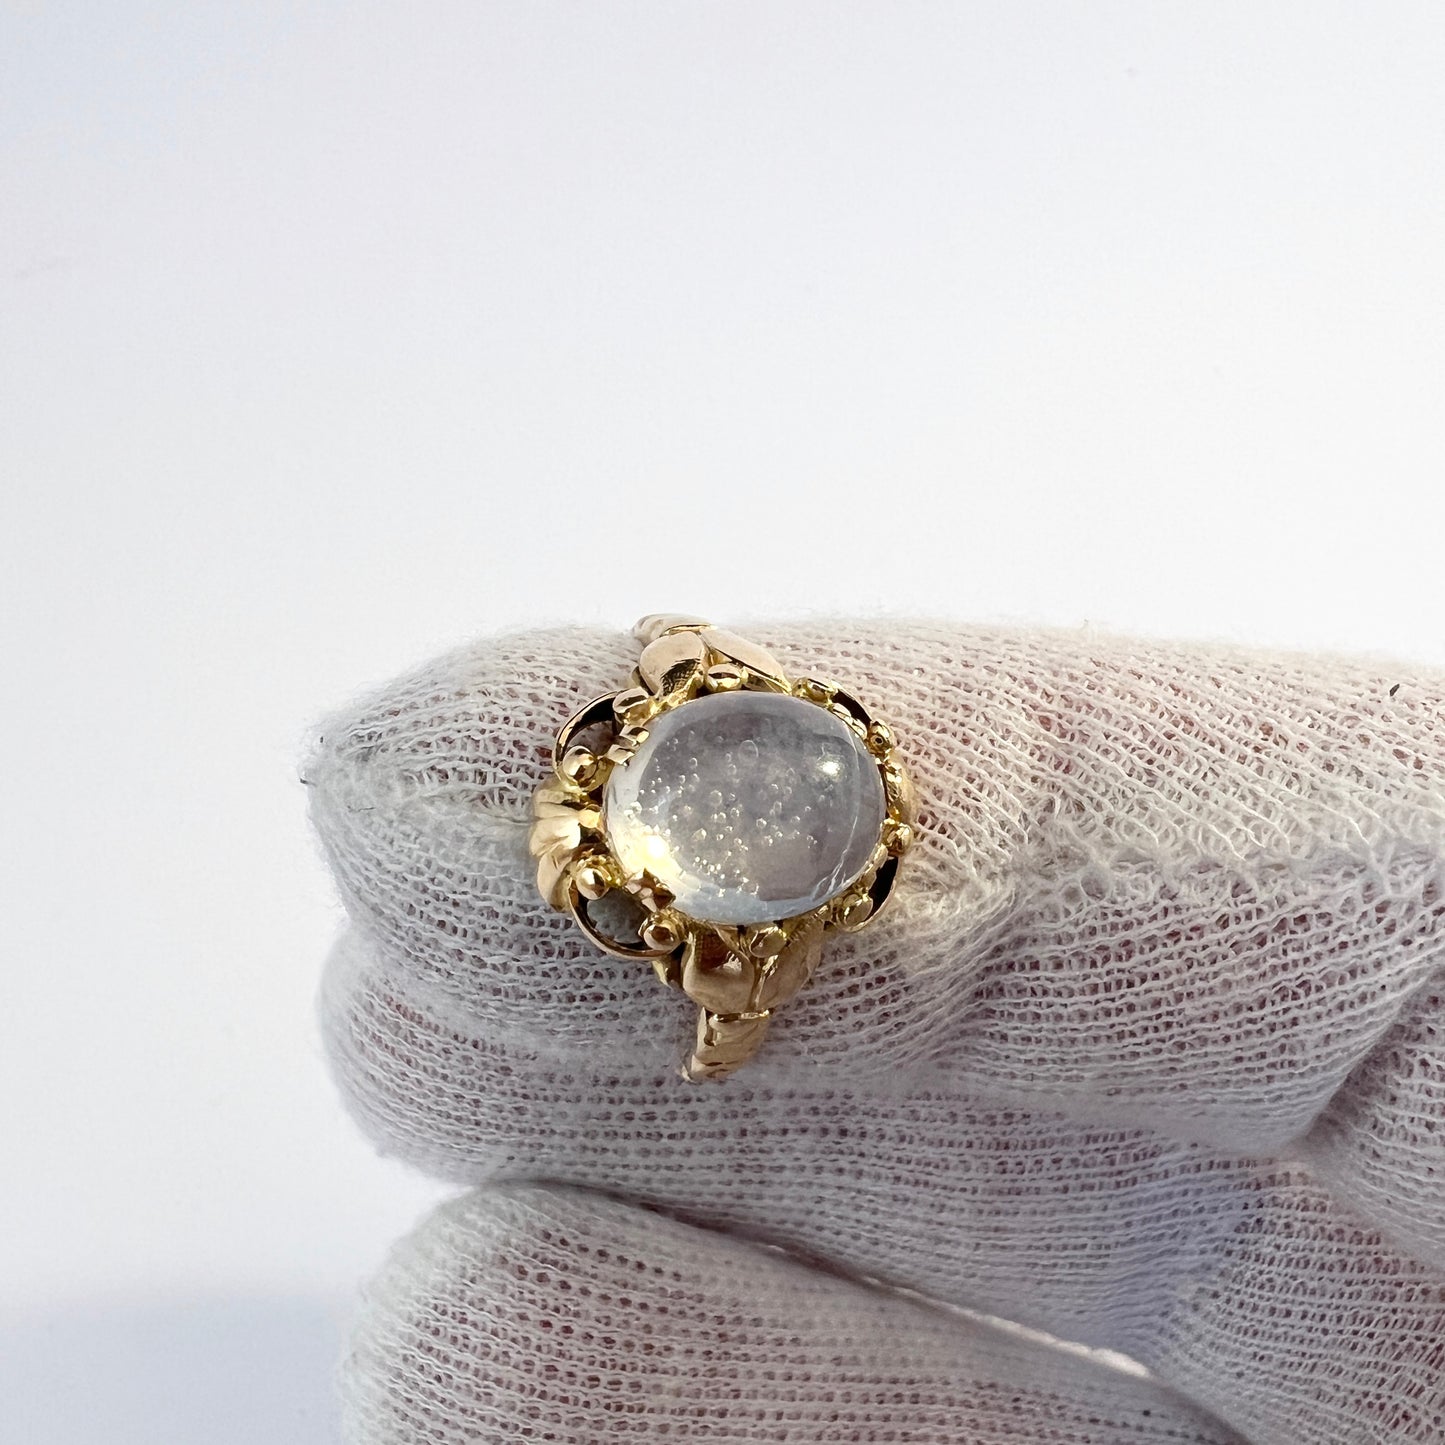 Ceson, Sweden 1954. Vintage 18k Gold Moonstone Ring